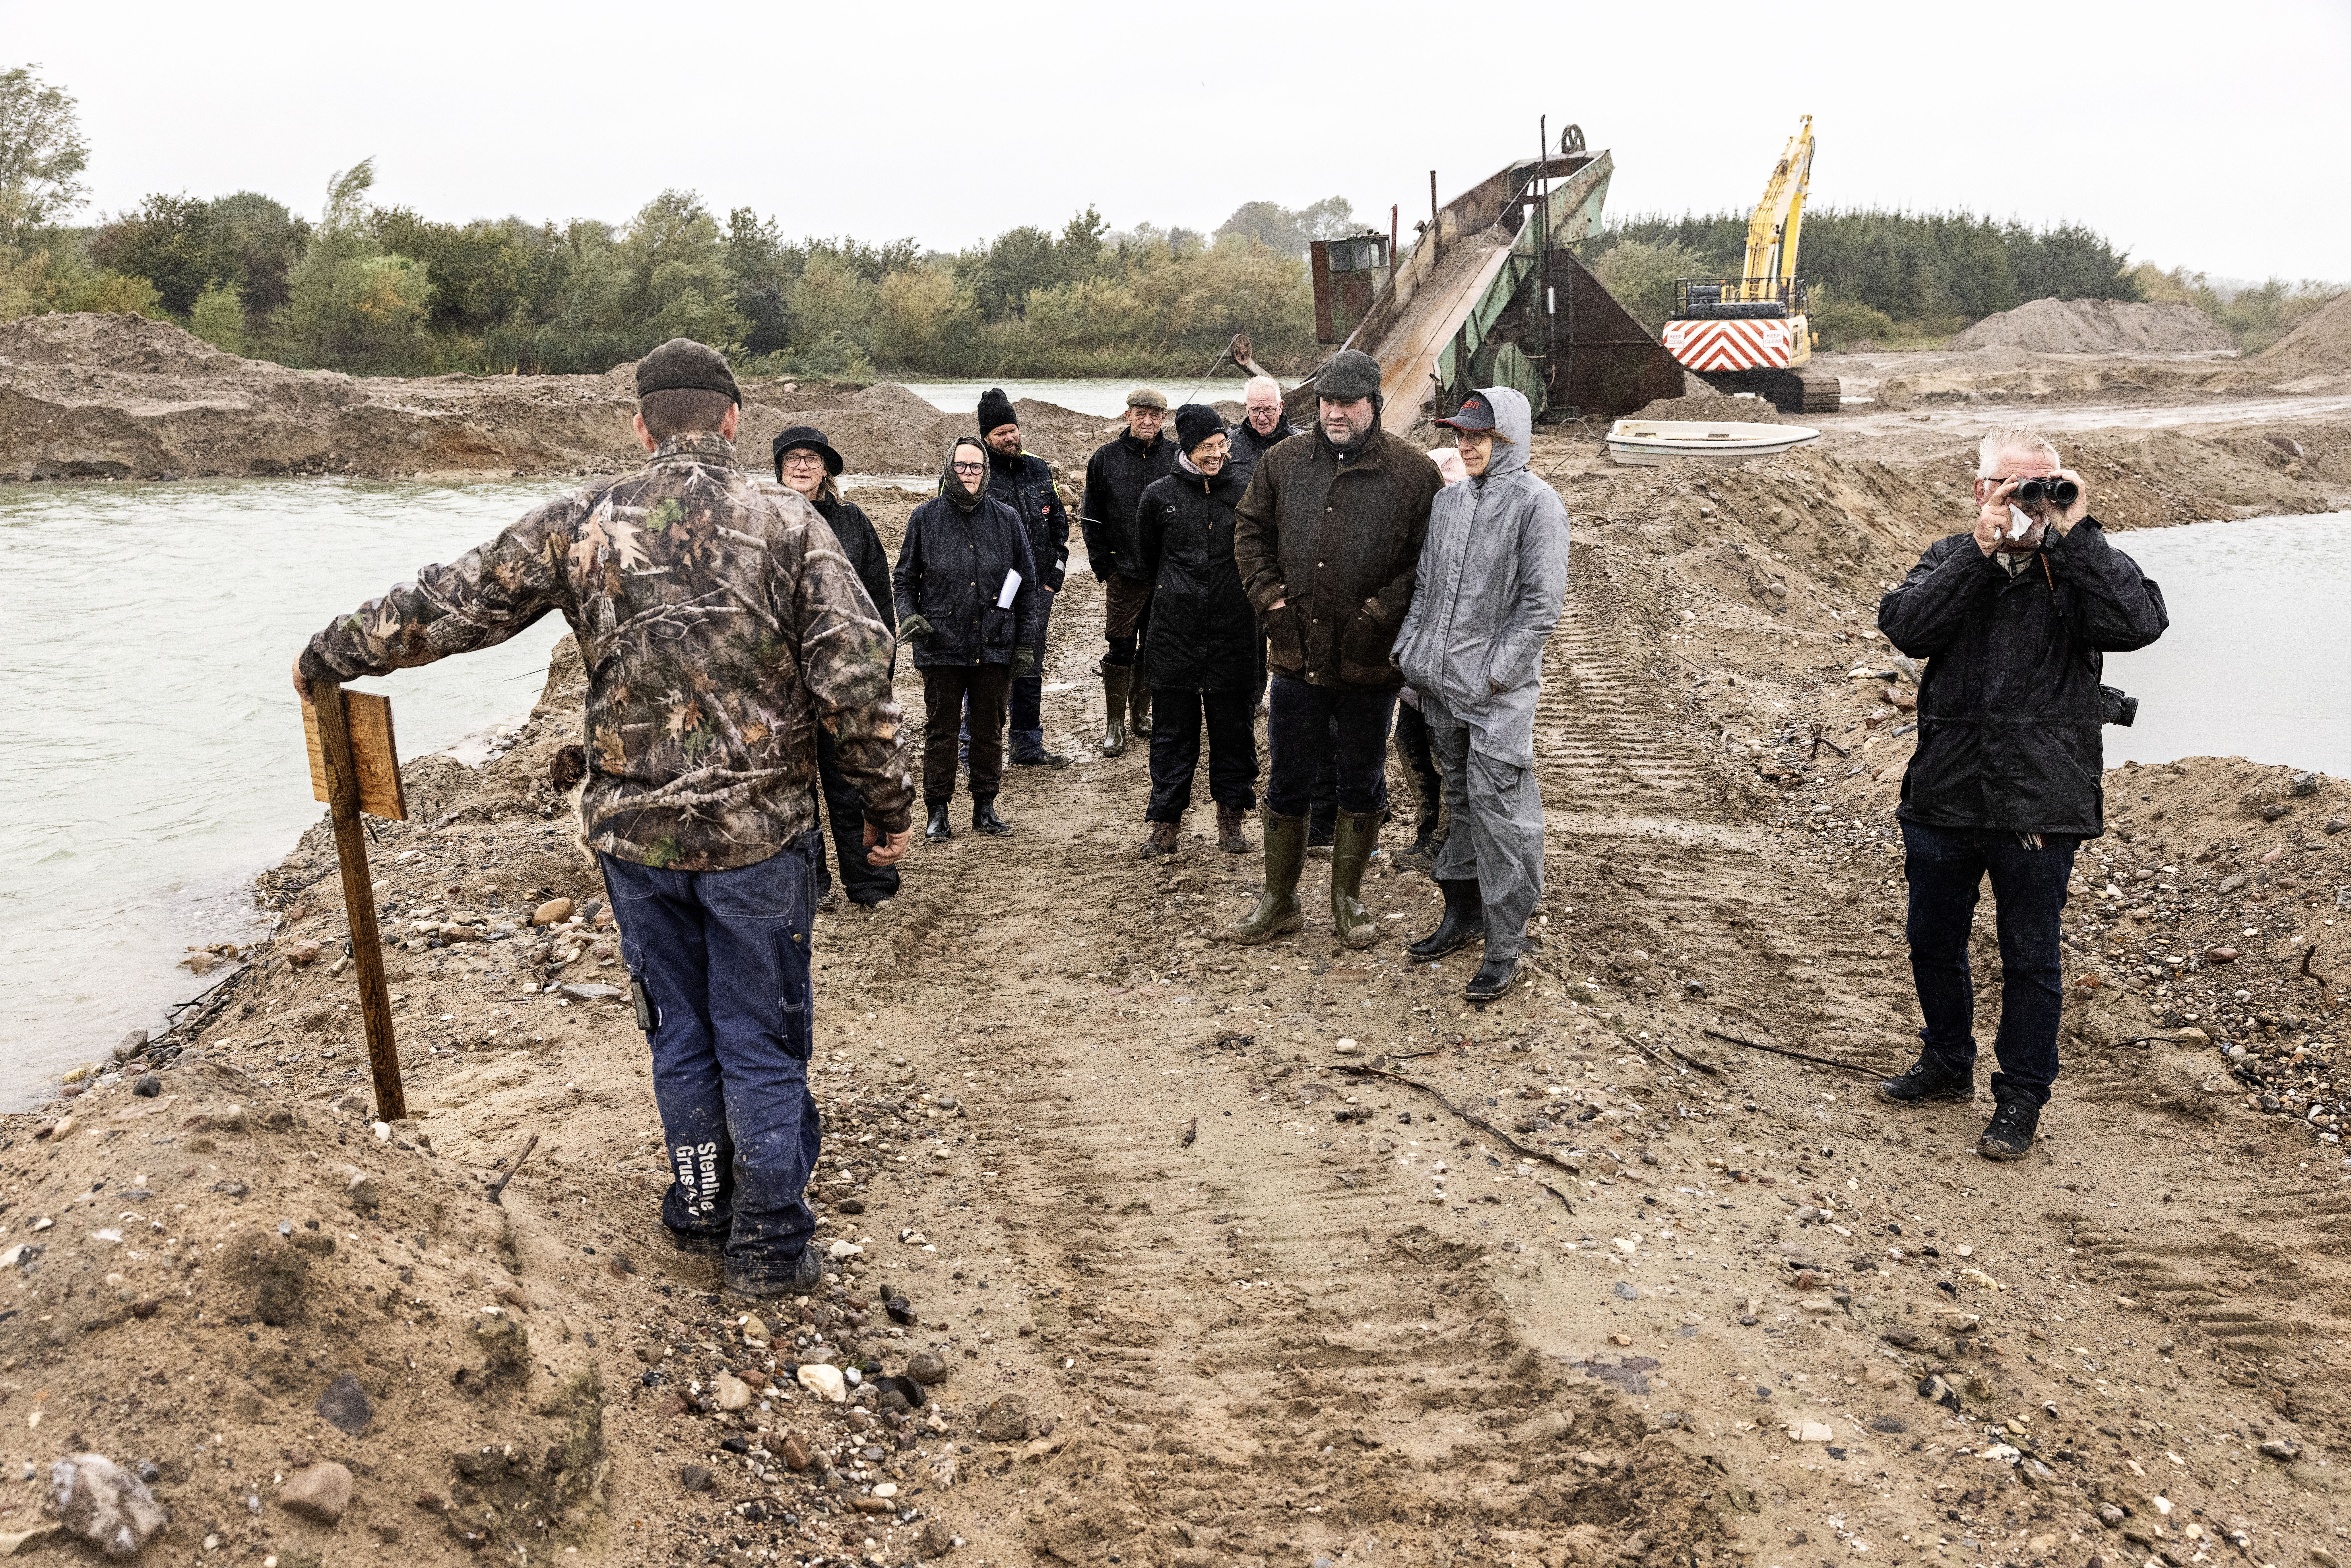 Medarbejderne i Stenlille Grusgrav lod de store maskiner stå og havde et et bredt program med fokus på samarbejde, trivsel og naturværdier i grusgraven.